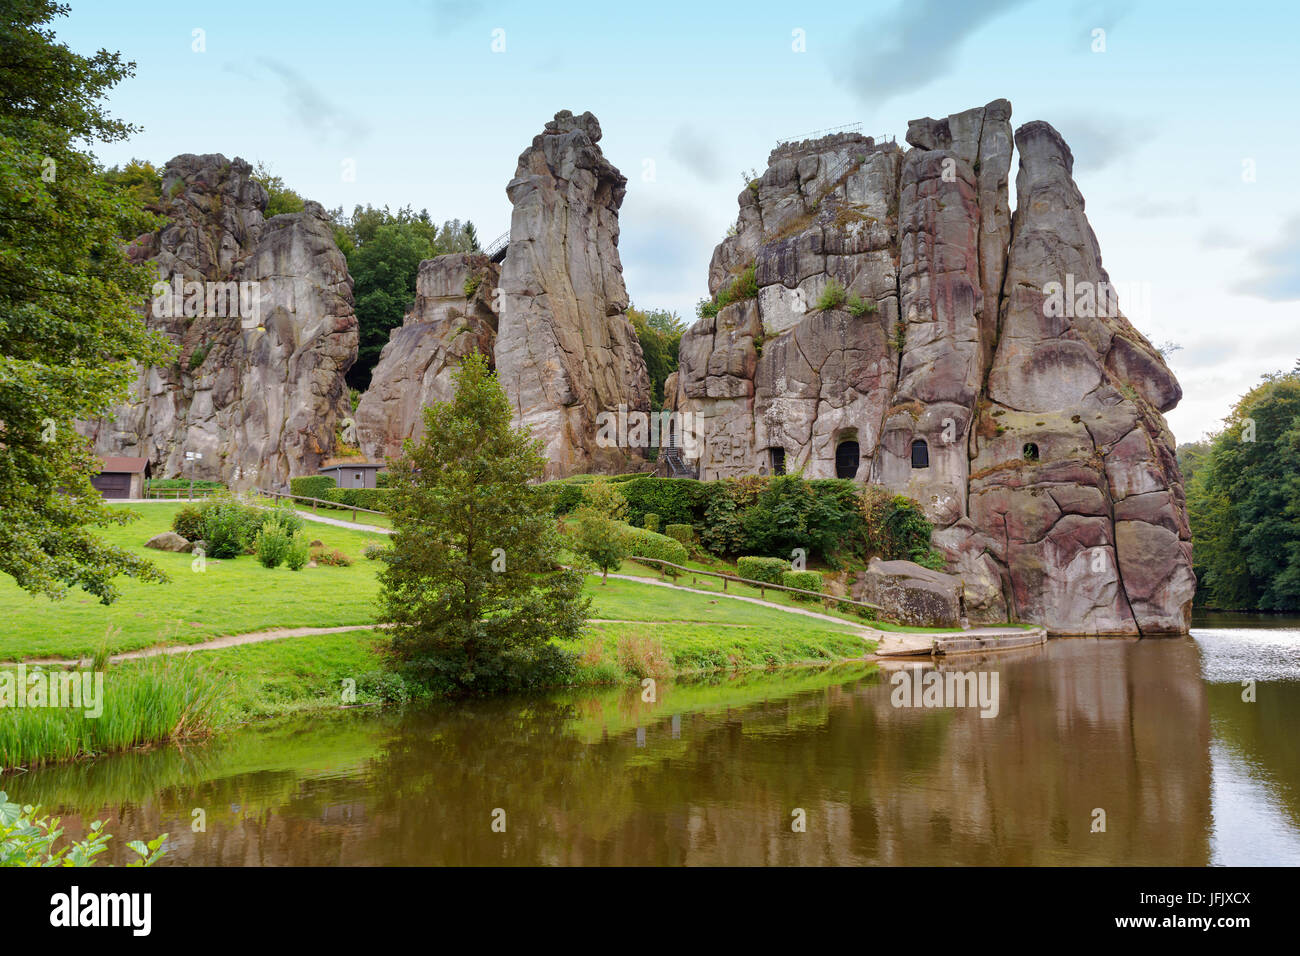 Stone Group den Externsteinen in der Nähe der Stadt Detmold, Deutschland. Stockfoto